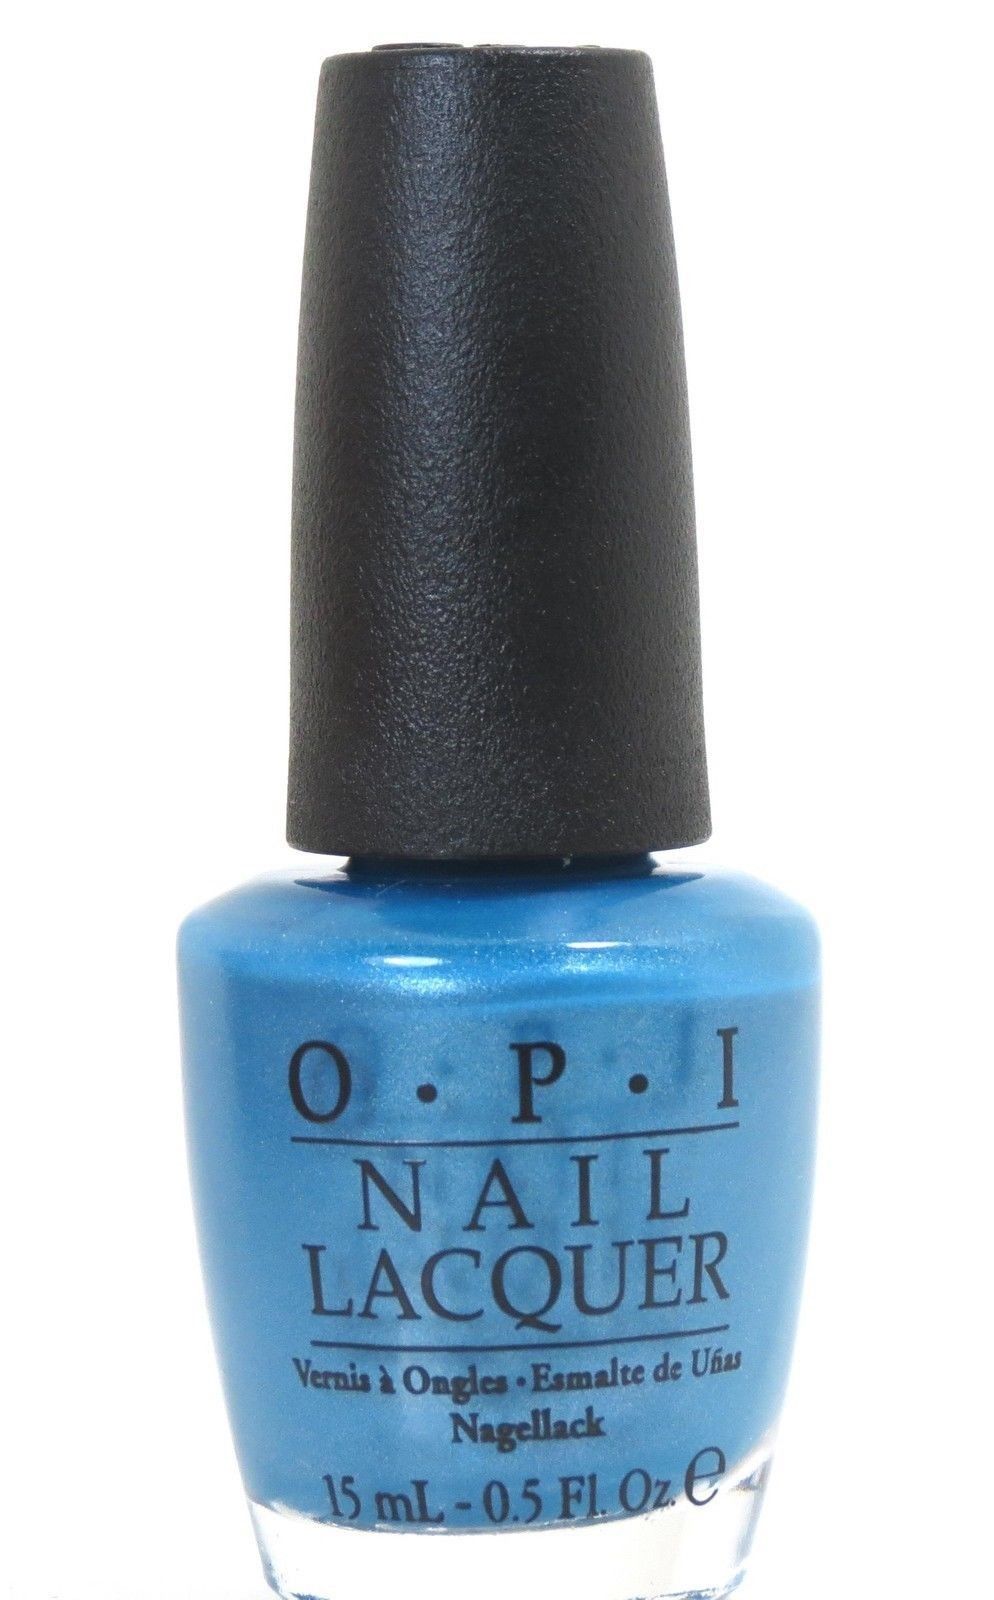 Sơn móng tay OPI NL B85 với tông màu xanh mát mắt với khả năng thu hút mọi ánh nhìn.